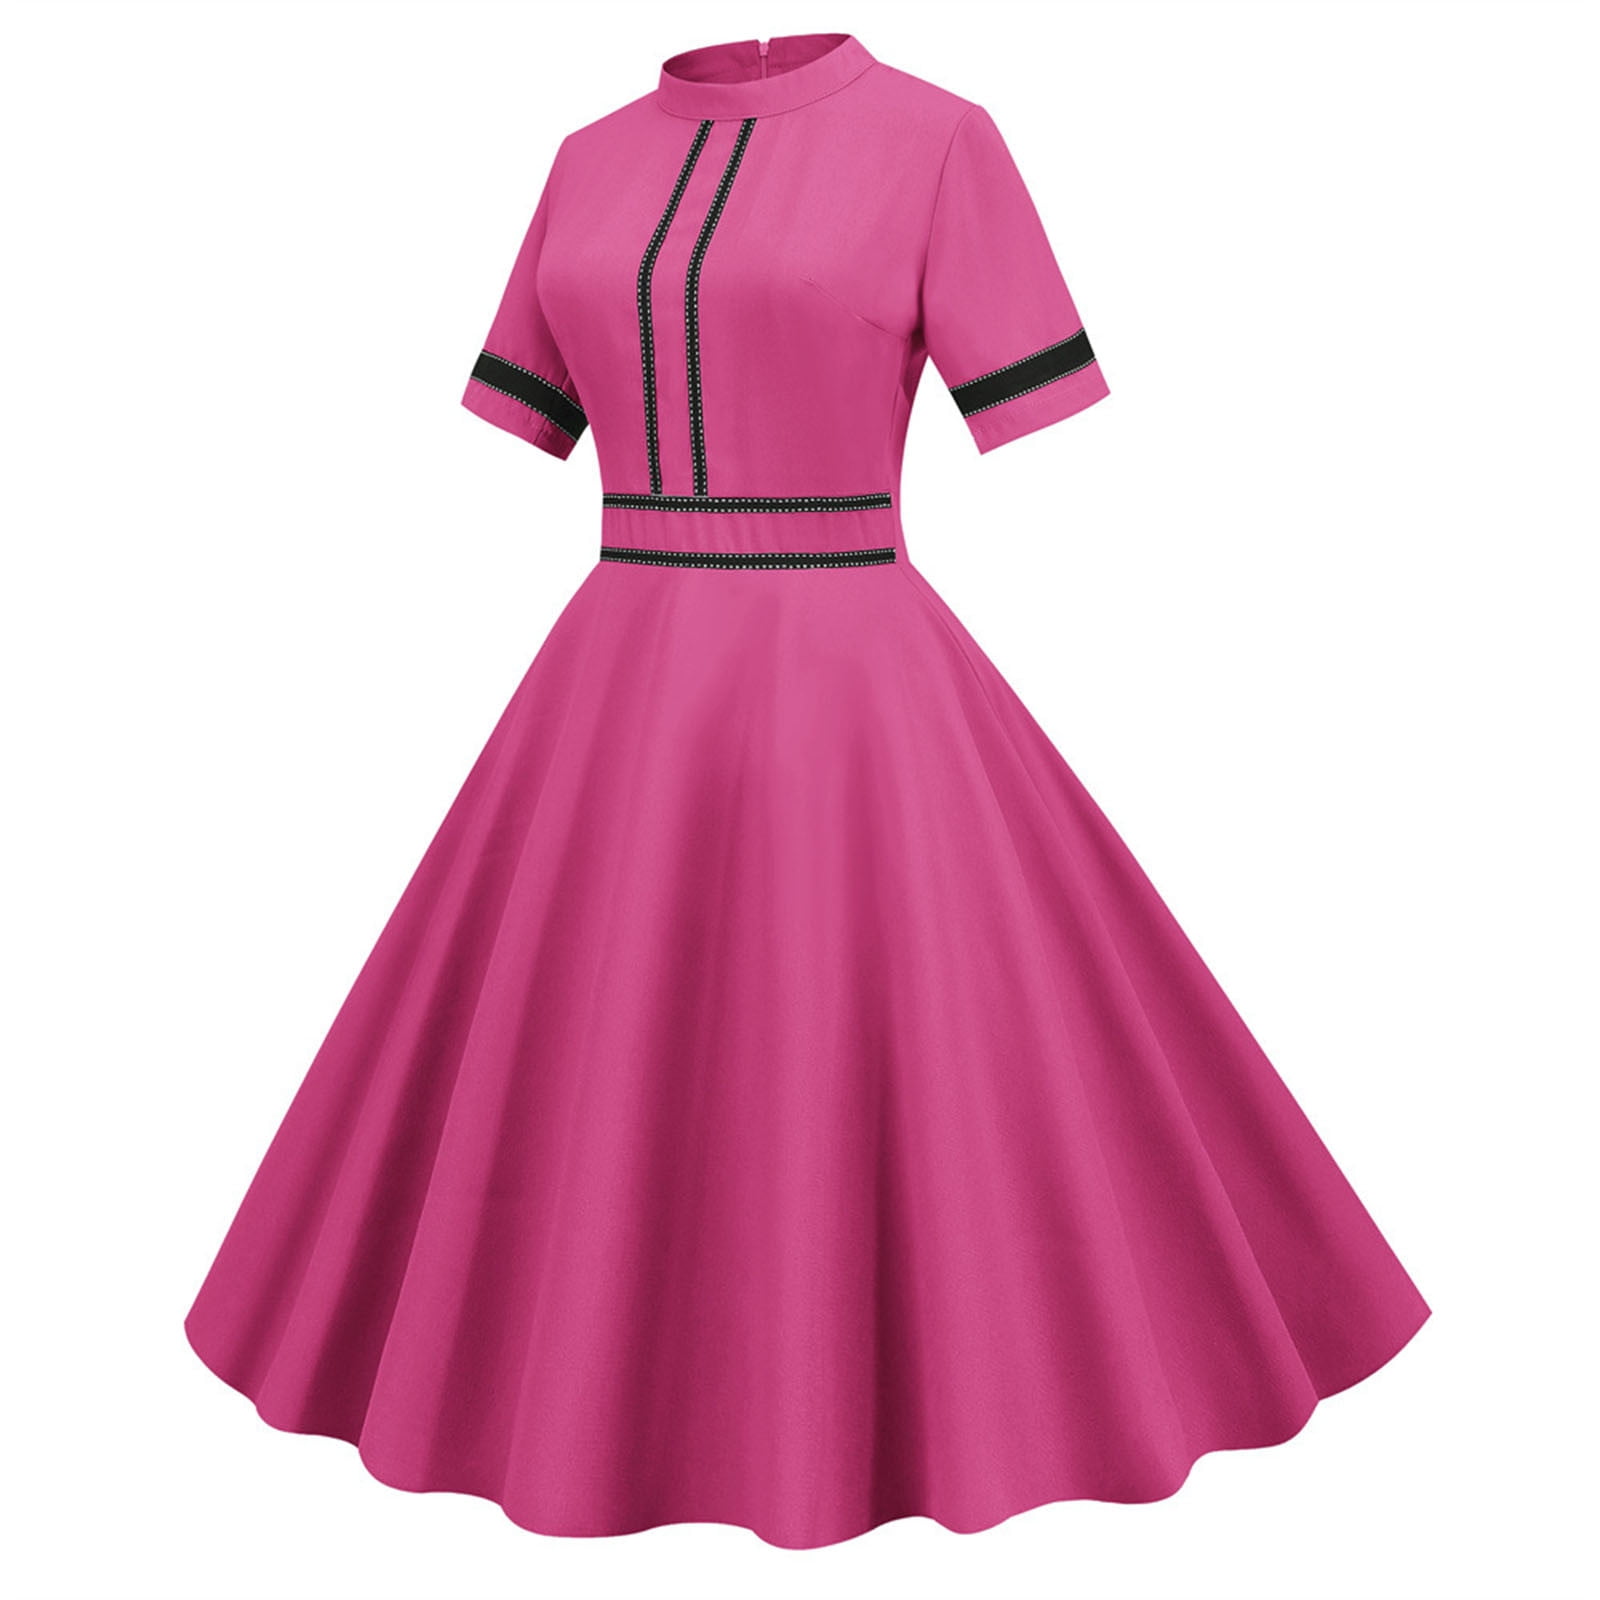 Bust 36 Vintage 1950s Dusky Pink Damask Evening Dress